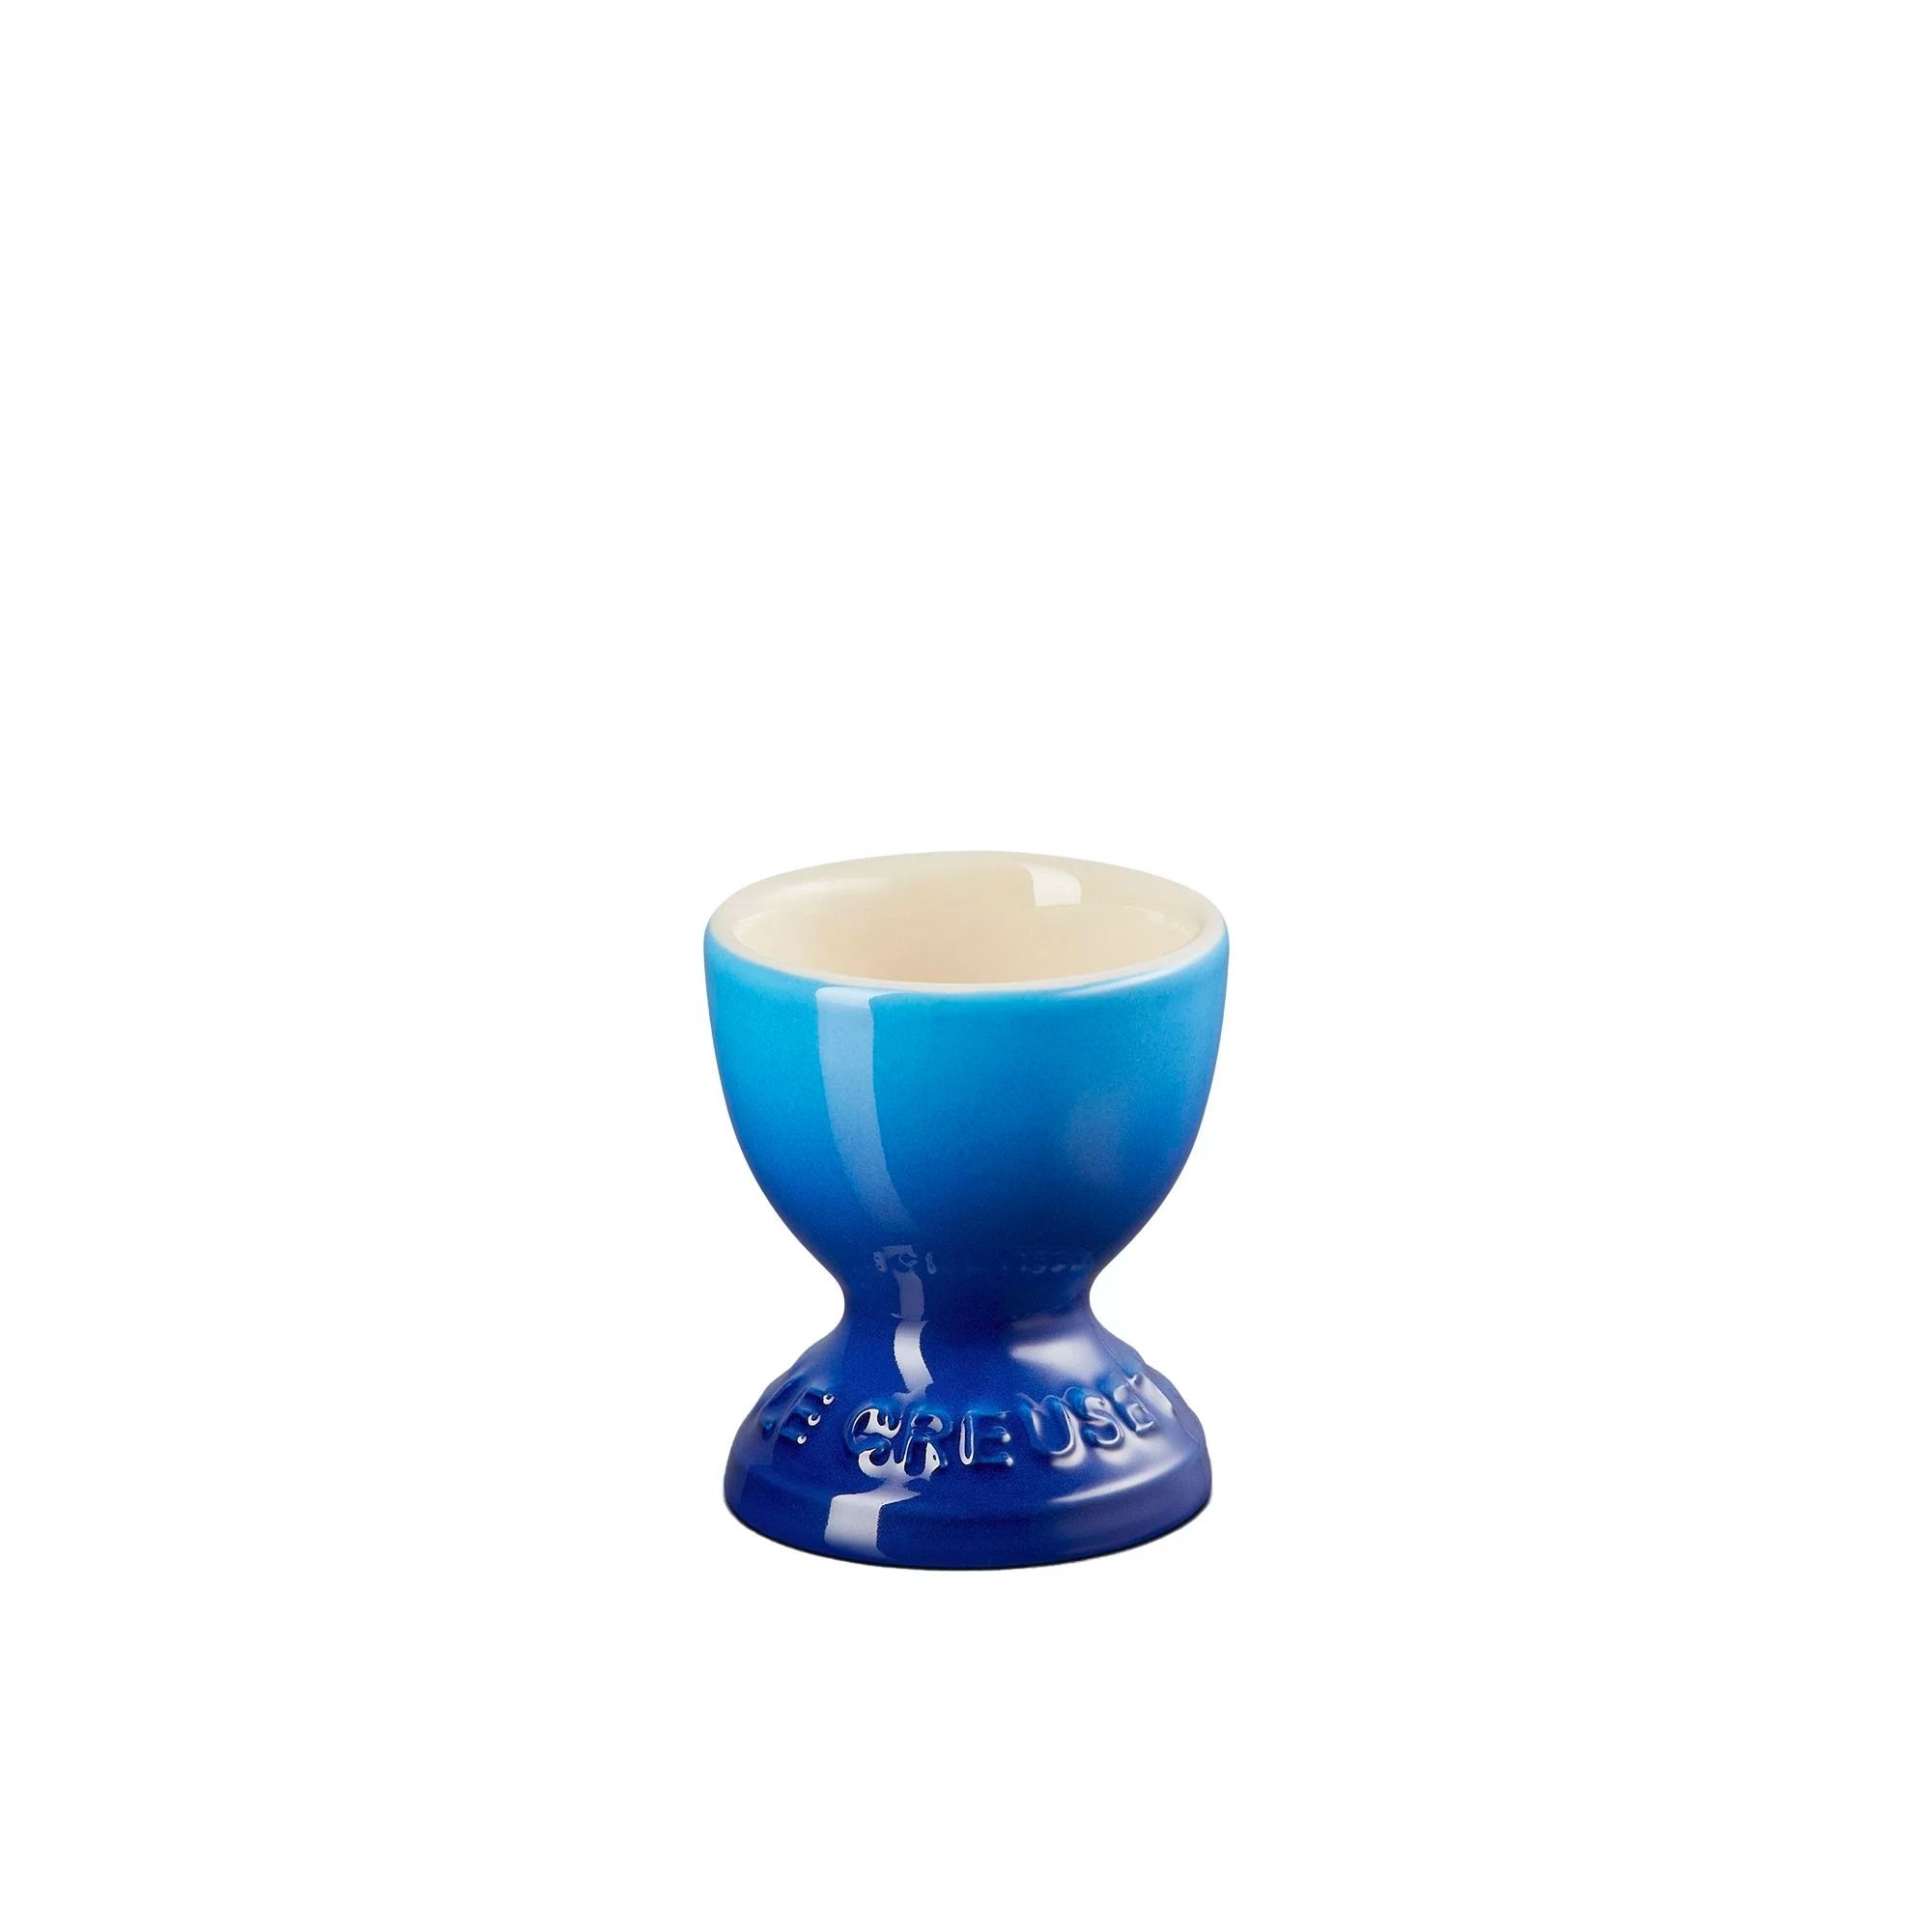 Le Creuset Stoneware Egg Cup Azure Blue Image 1